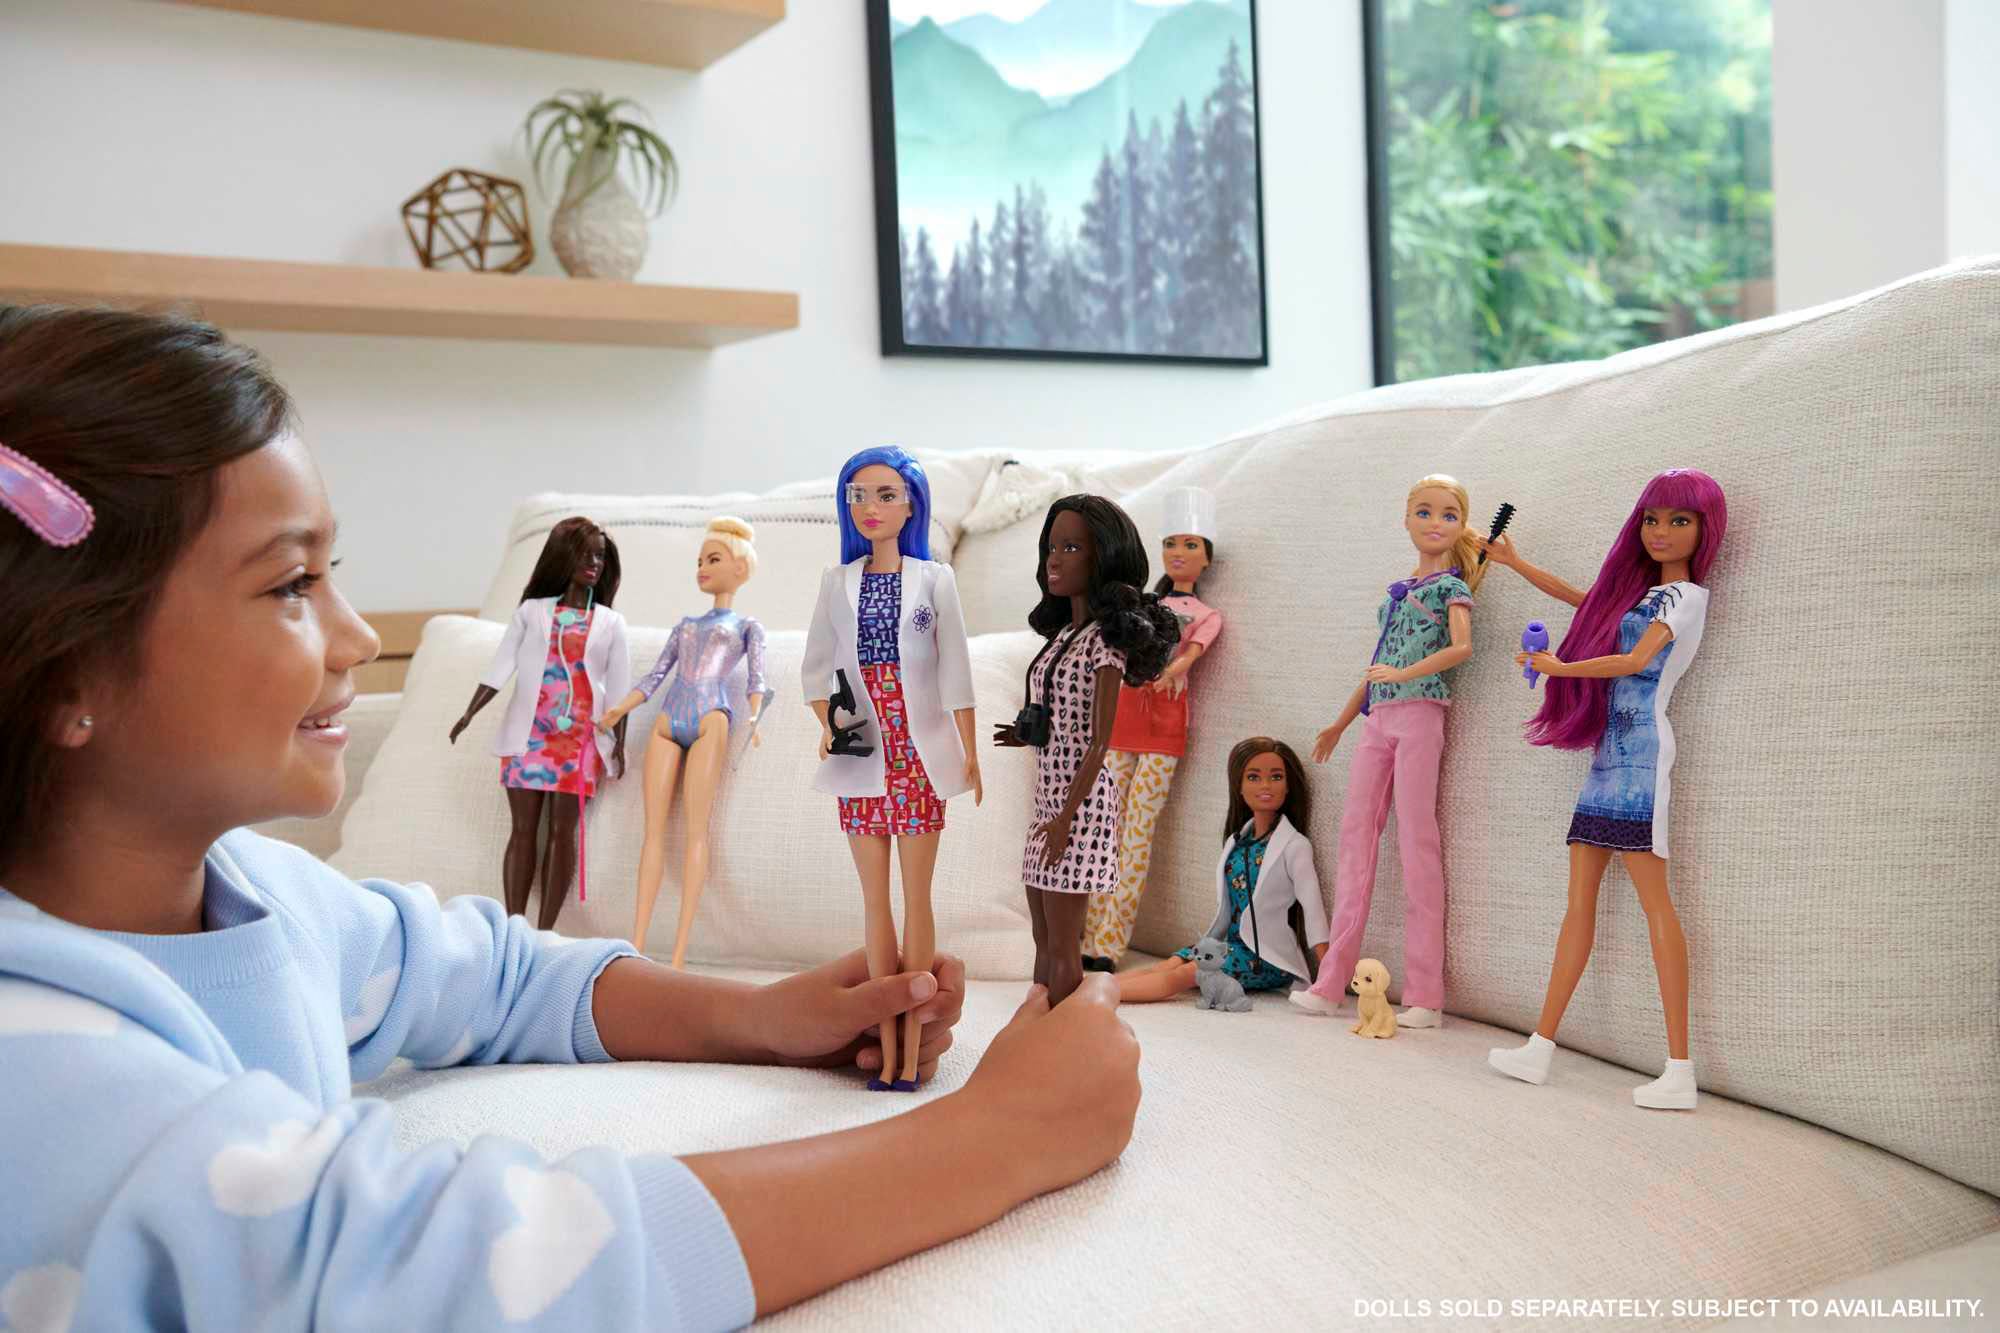 Barbie Anziehpuppe »Krankenschwester«